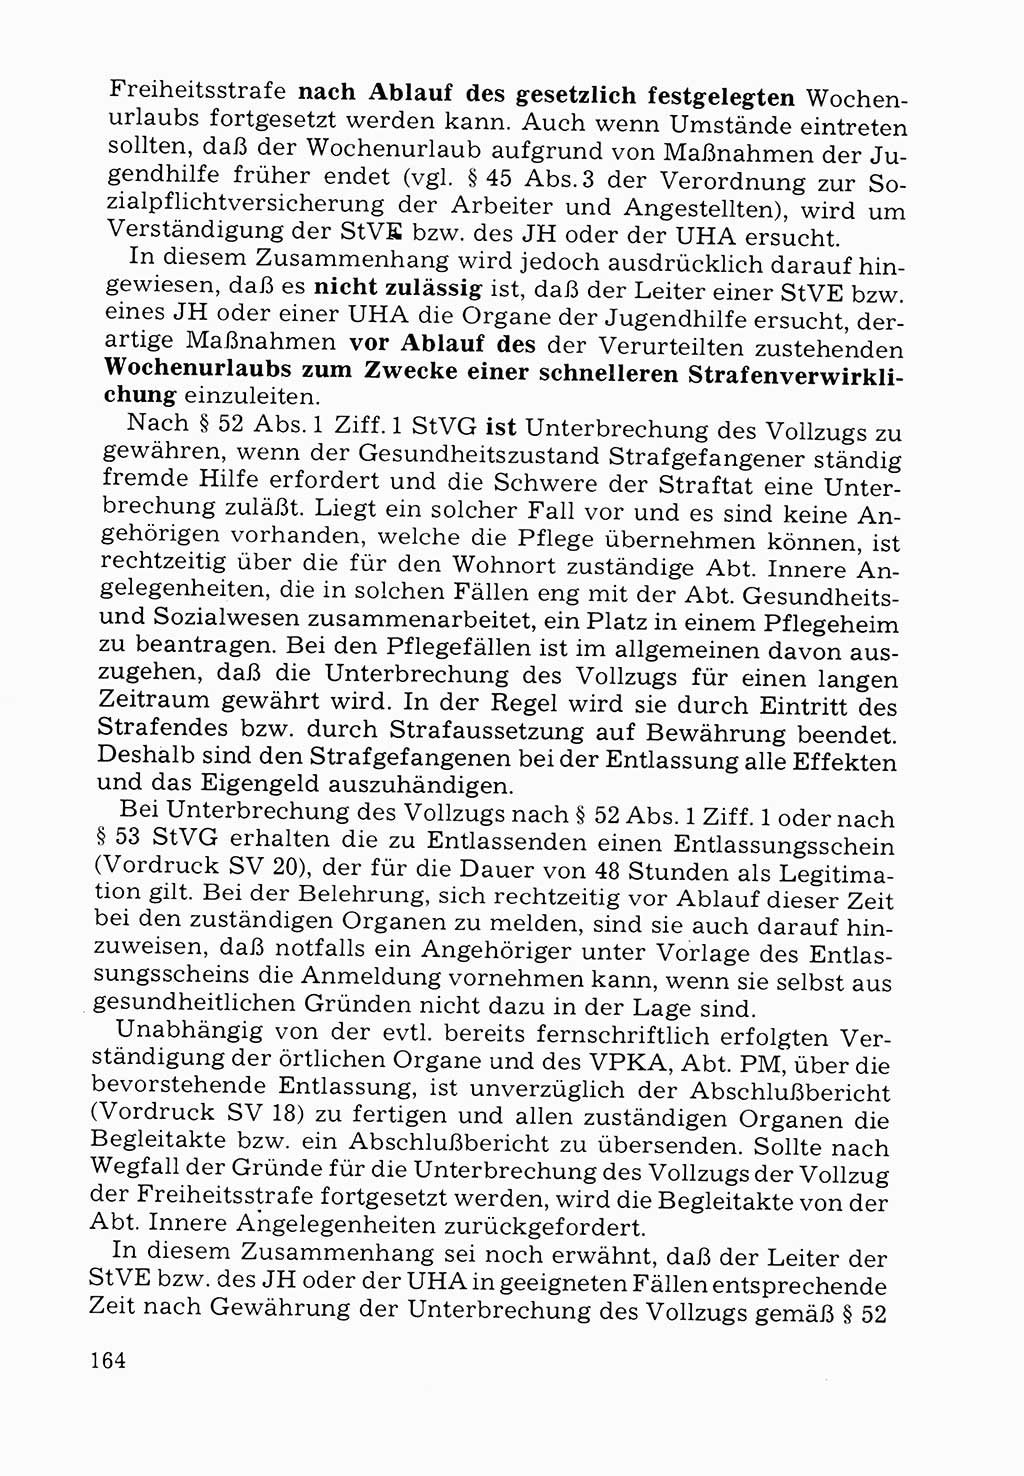 Verwaltungsmäßige Aufgaben beim Vollzug der Untersuchungshaft (U-Haft) sowie der Strafen mit Freiheitsentzug (SV) [Deutsche Demokratische Republik (DDR)] 1980, Seite 164 (Aufg. Vollz. U-Haft SV DDR 1980, S. 164)